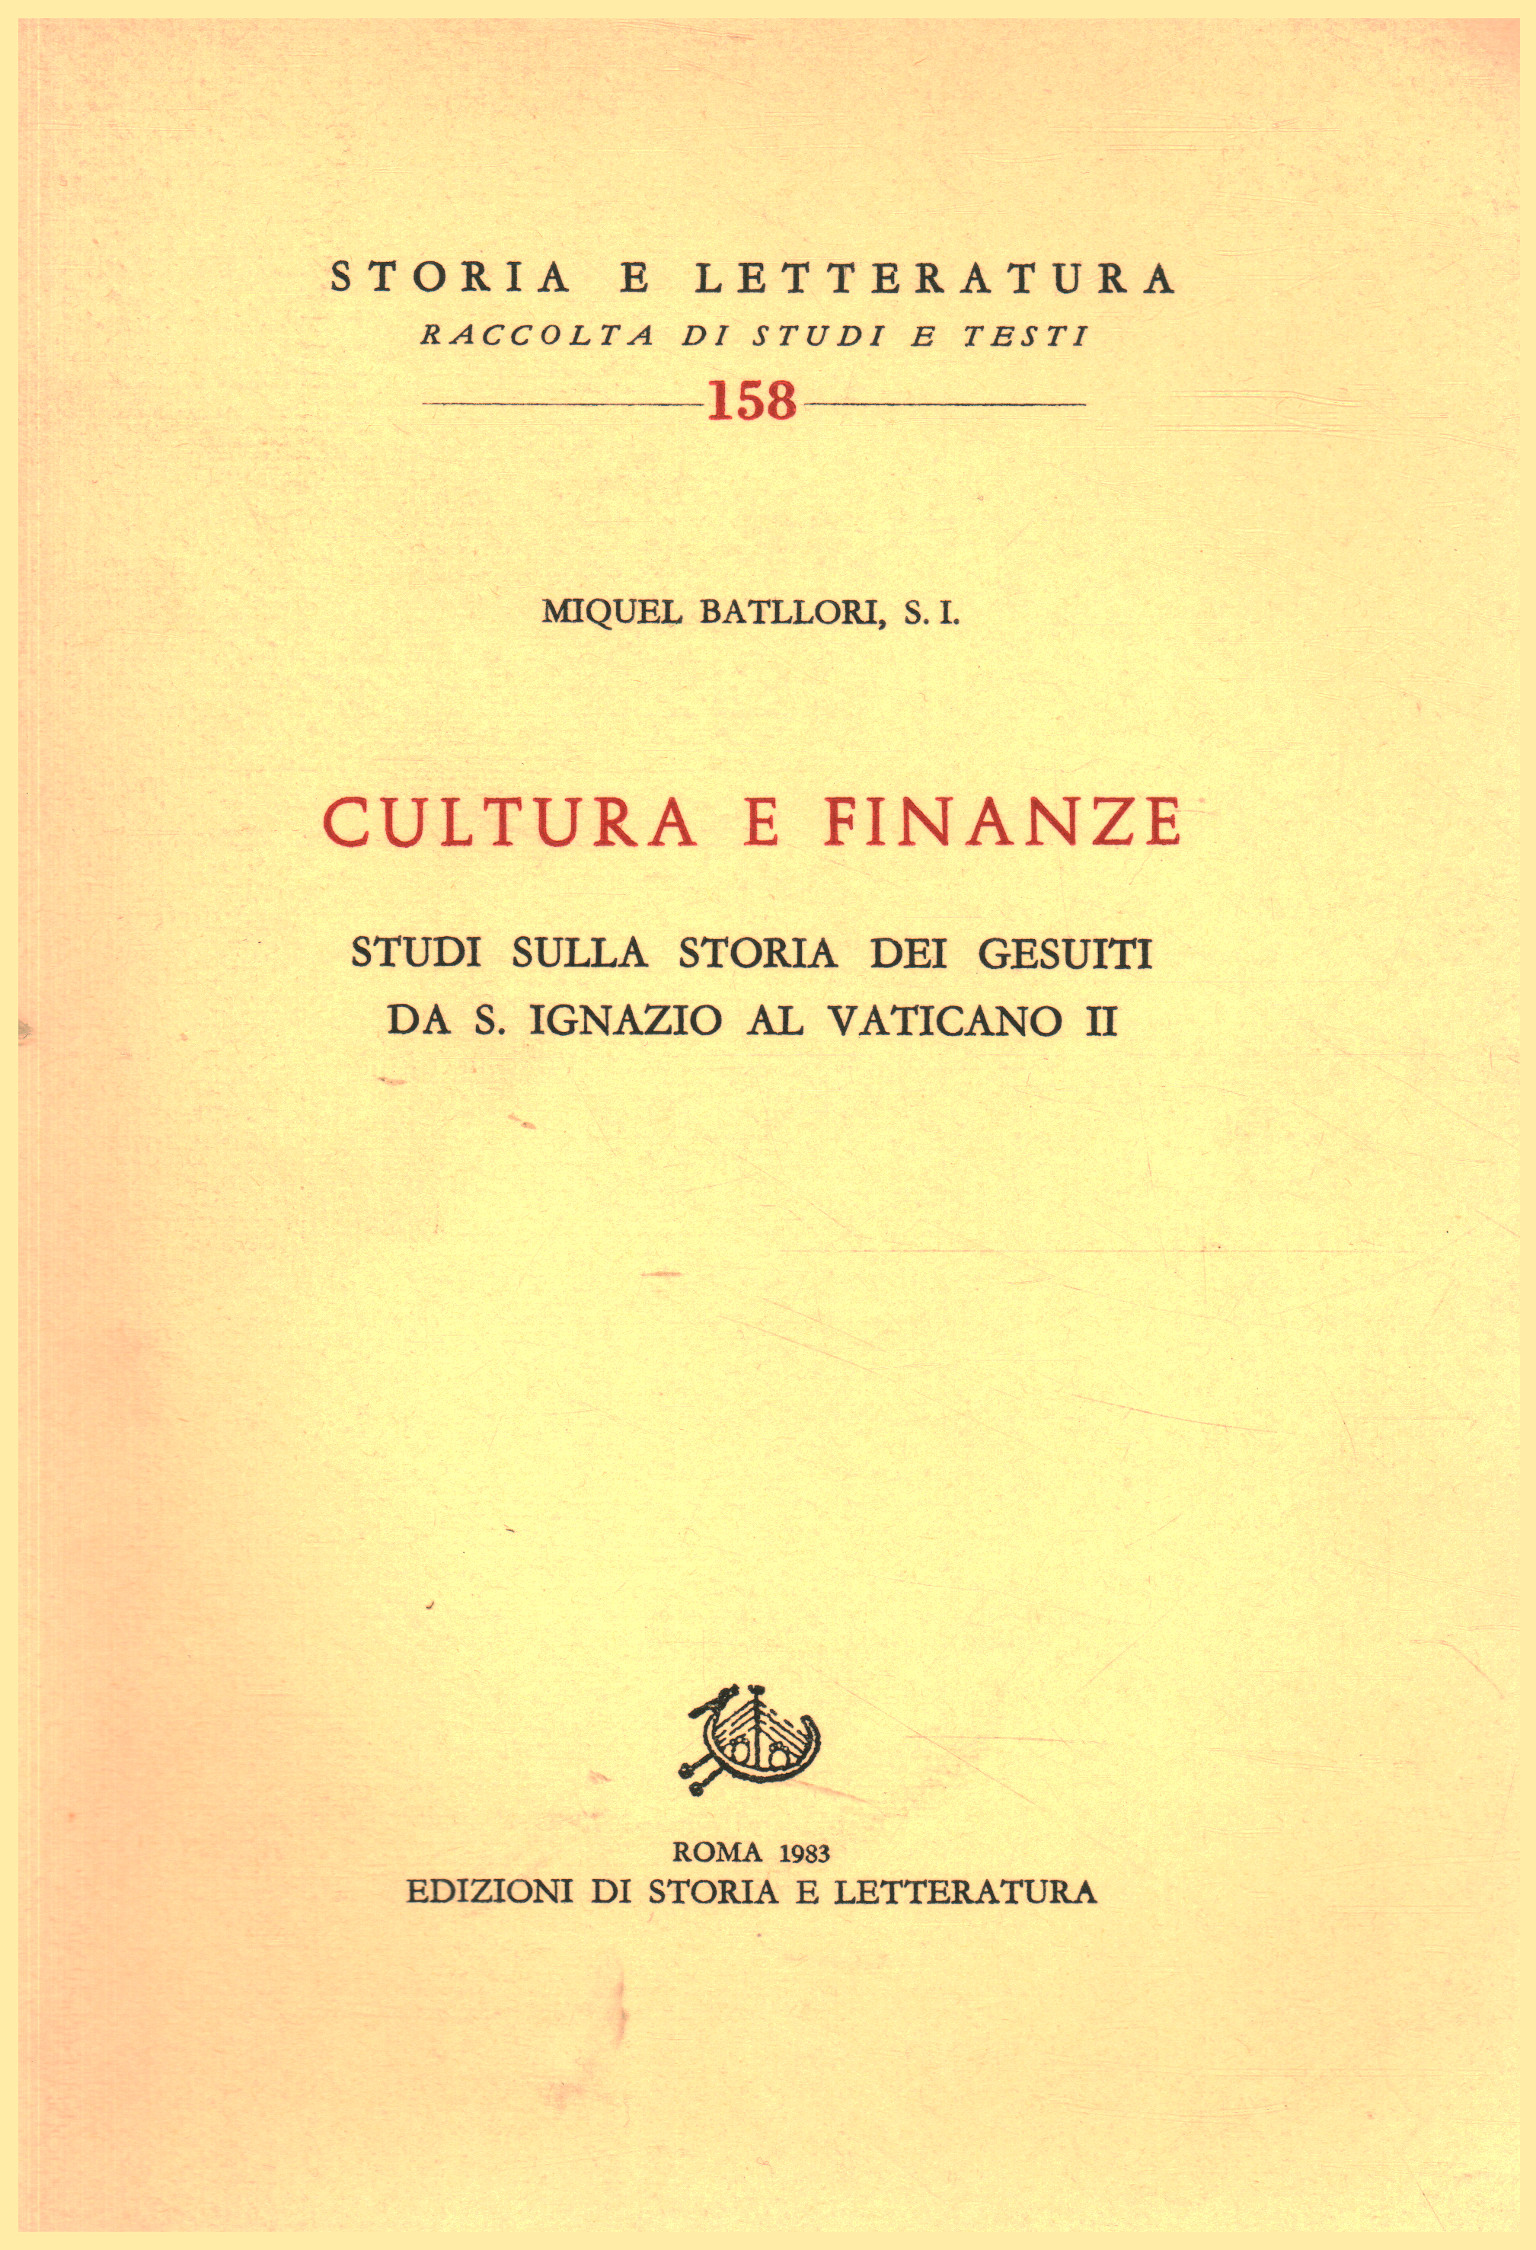 Culture and finance, Miquel Batllori